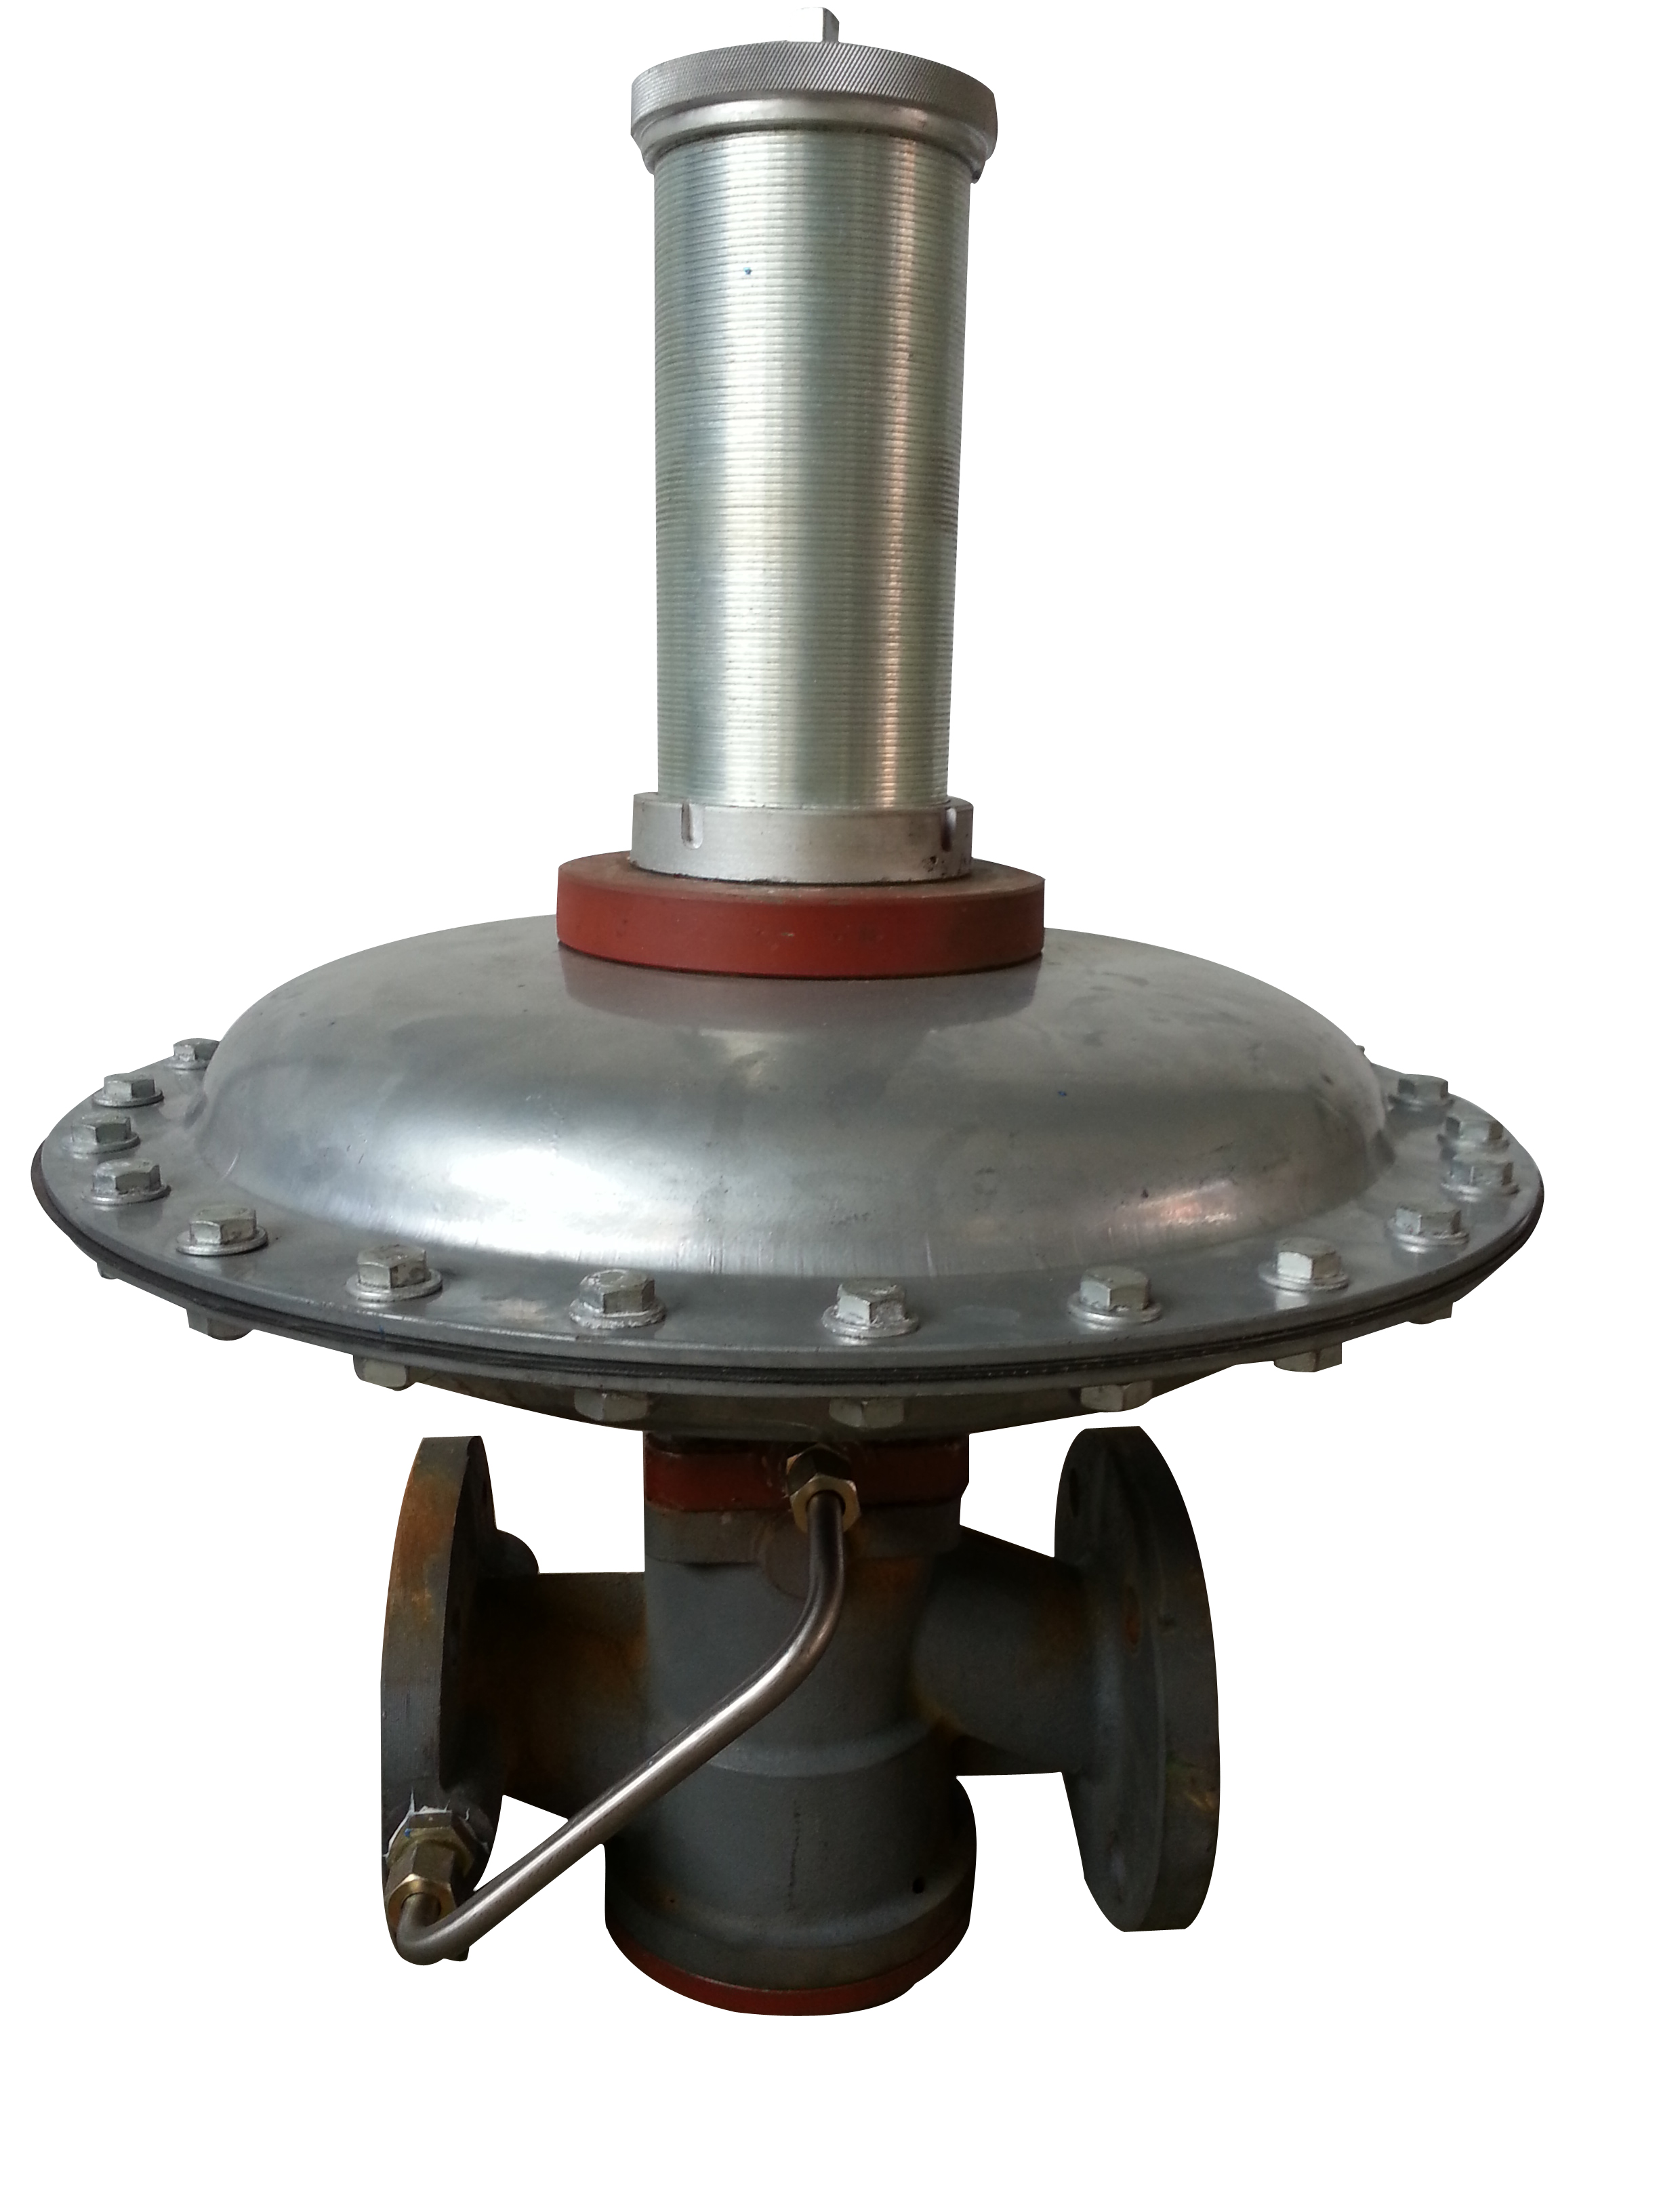 调压器 调压设备 供应燃气调压箱 调压器供应商   RTZ-*/0.4A型燃气调压器图片